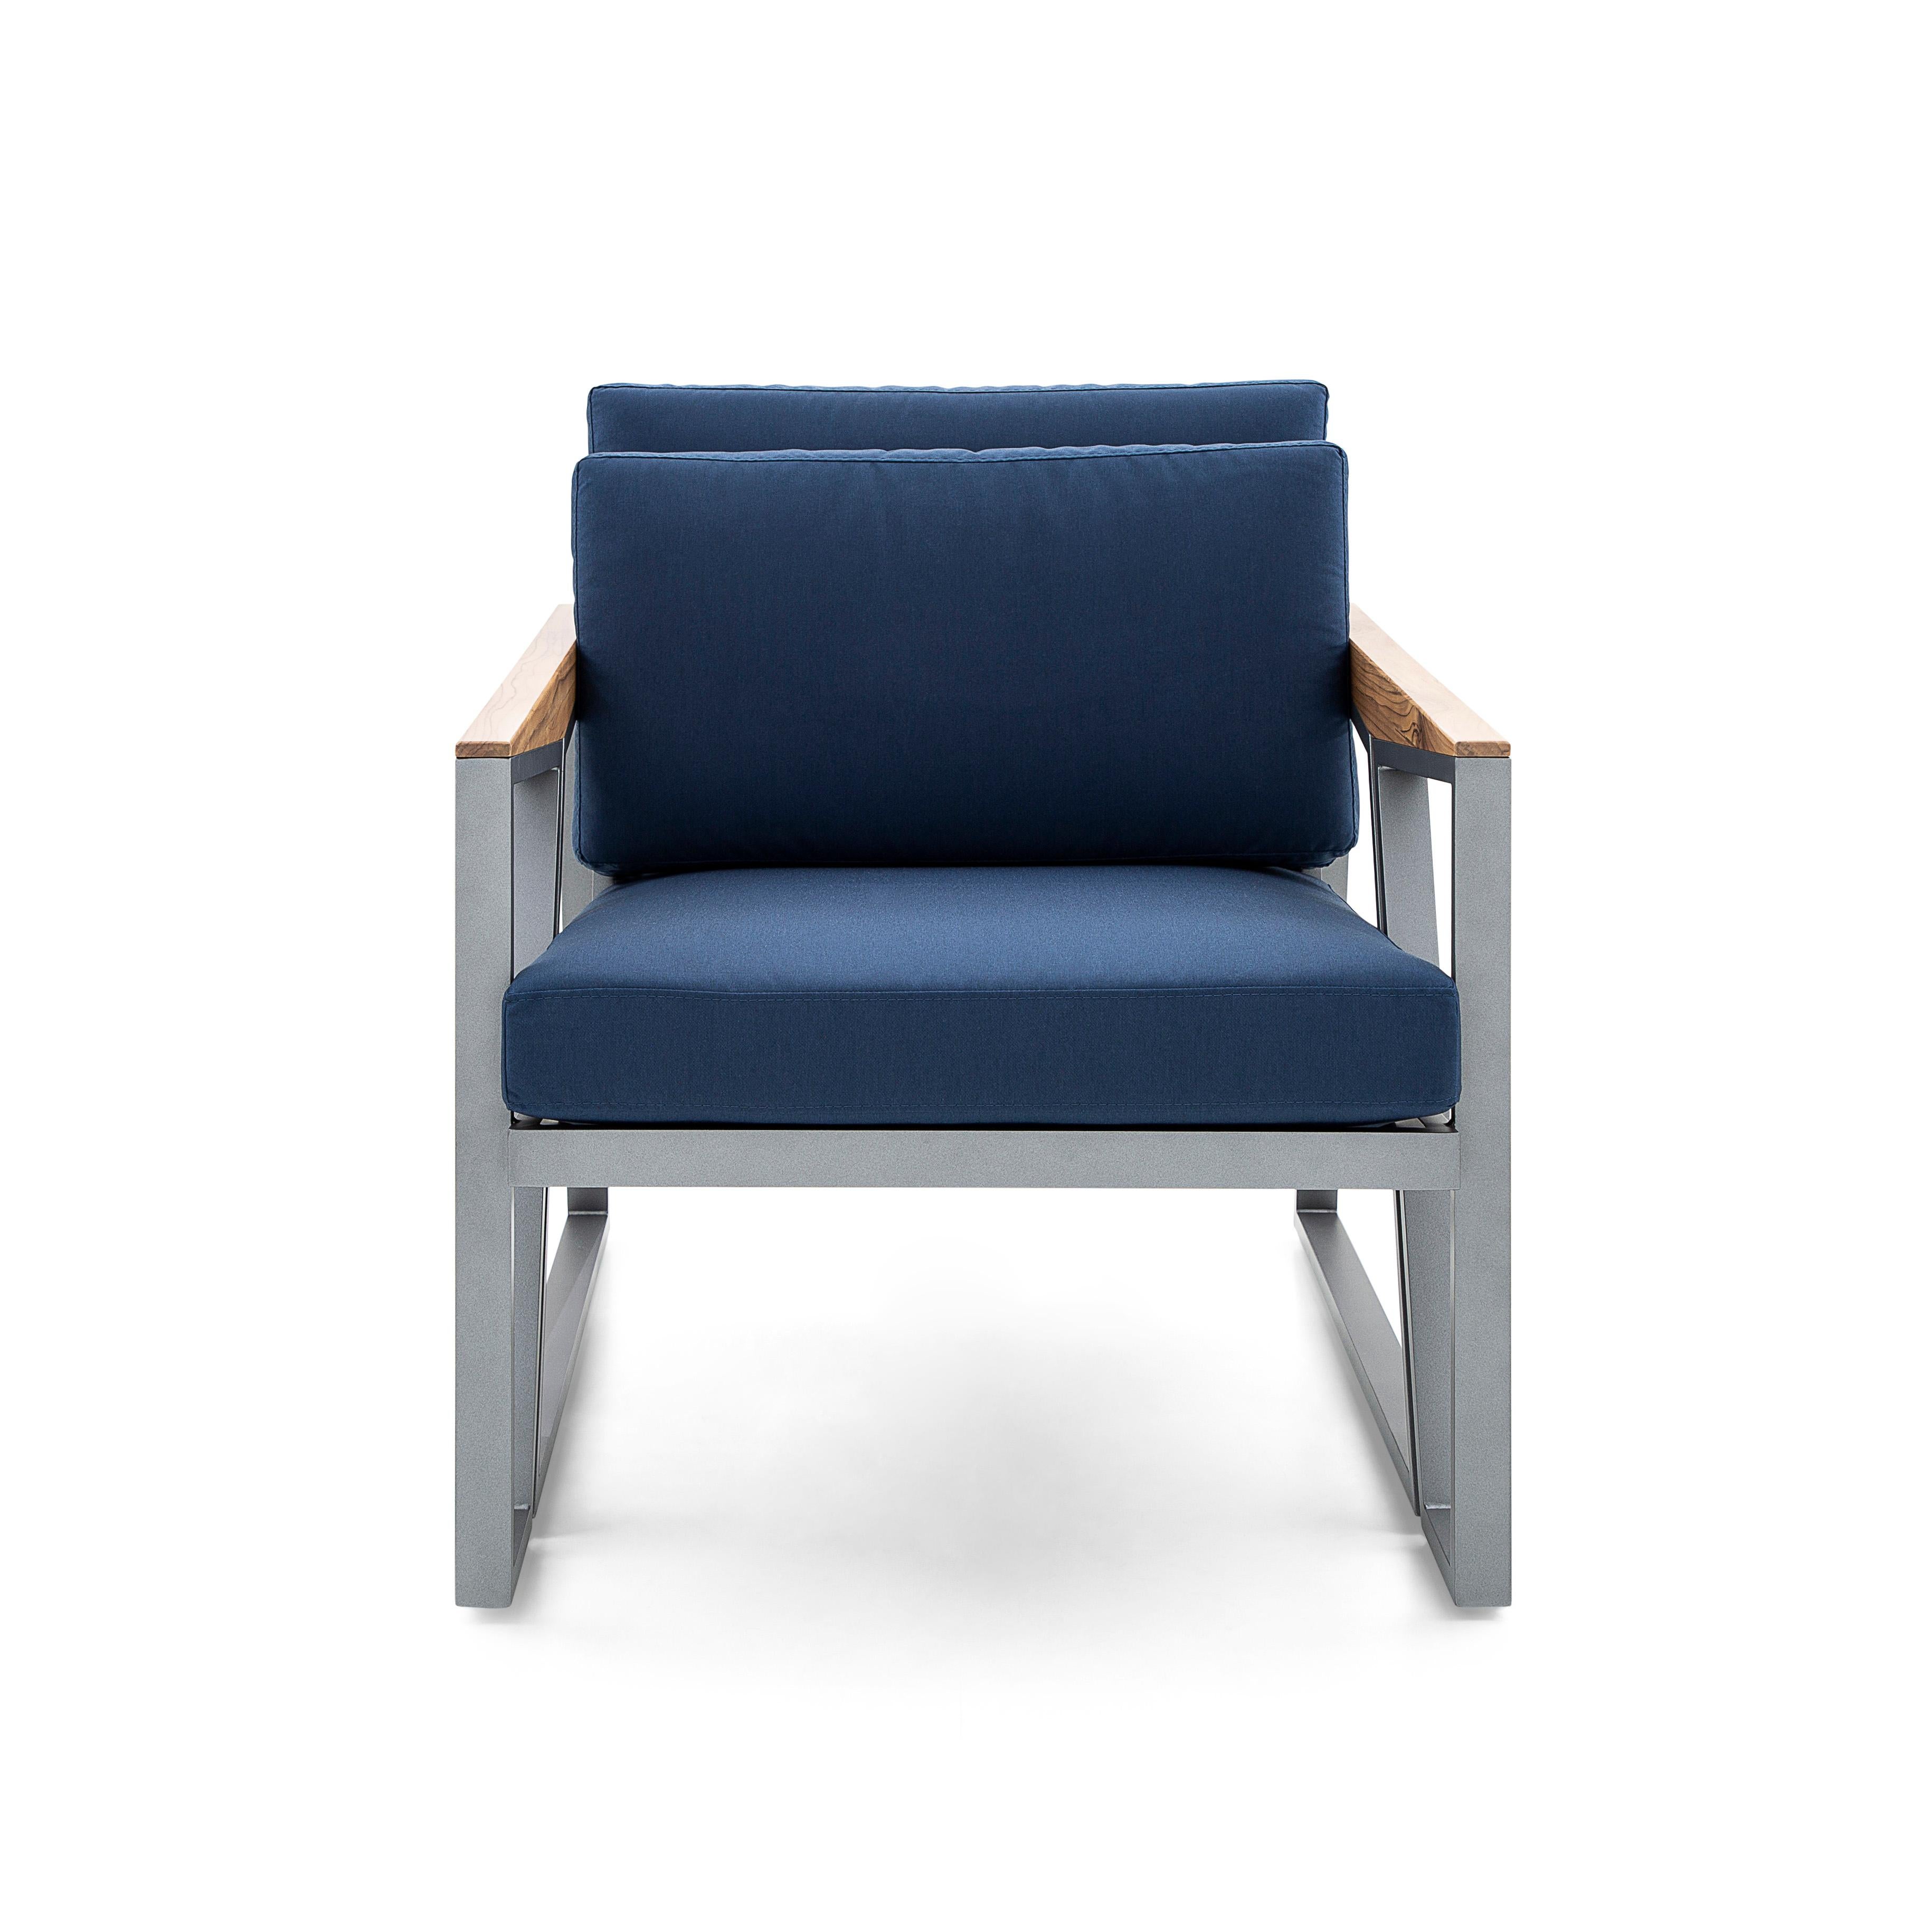 Der Sessel Scalene wurde von unserem fantastischen Uultis Design Team entworfen. Er ist mit einem schönen dunkelblauen Stoff gepolstert und verfügt über eine geschweißte Aluminiumstruktur, die dem Sessel mehr Widerstandskraft verleiht und Knarren